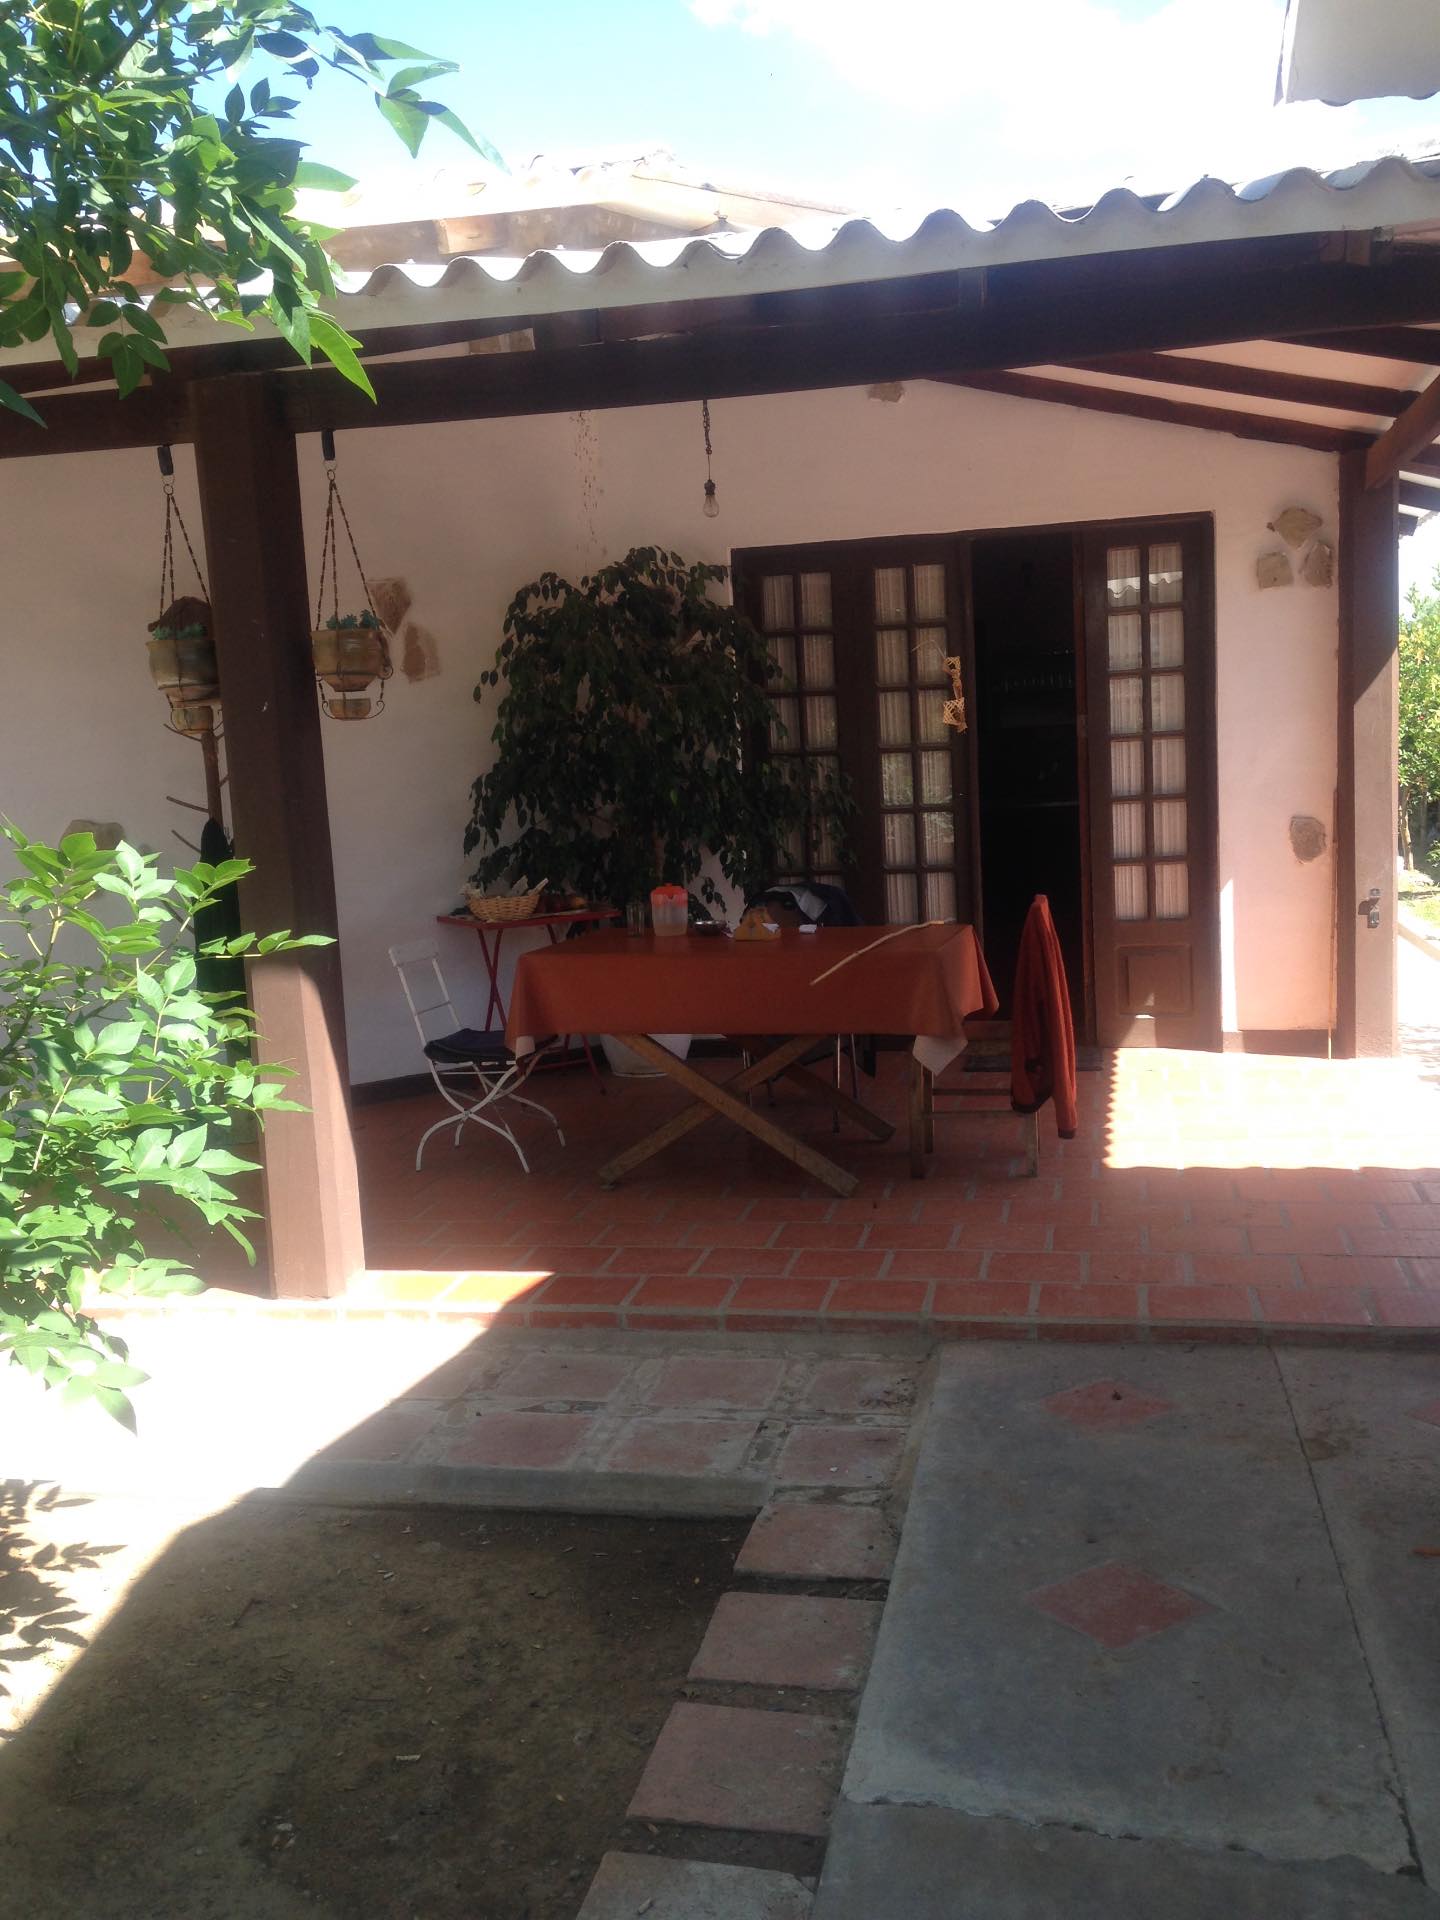 Casa en VentaMolle Mayu a 20 minutos de Sucre camino al aeropuerto de Alcantati del peaje de Cochis 2 km. A la derecha hacia Totacoa Foto 8